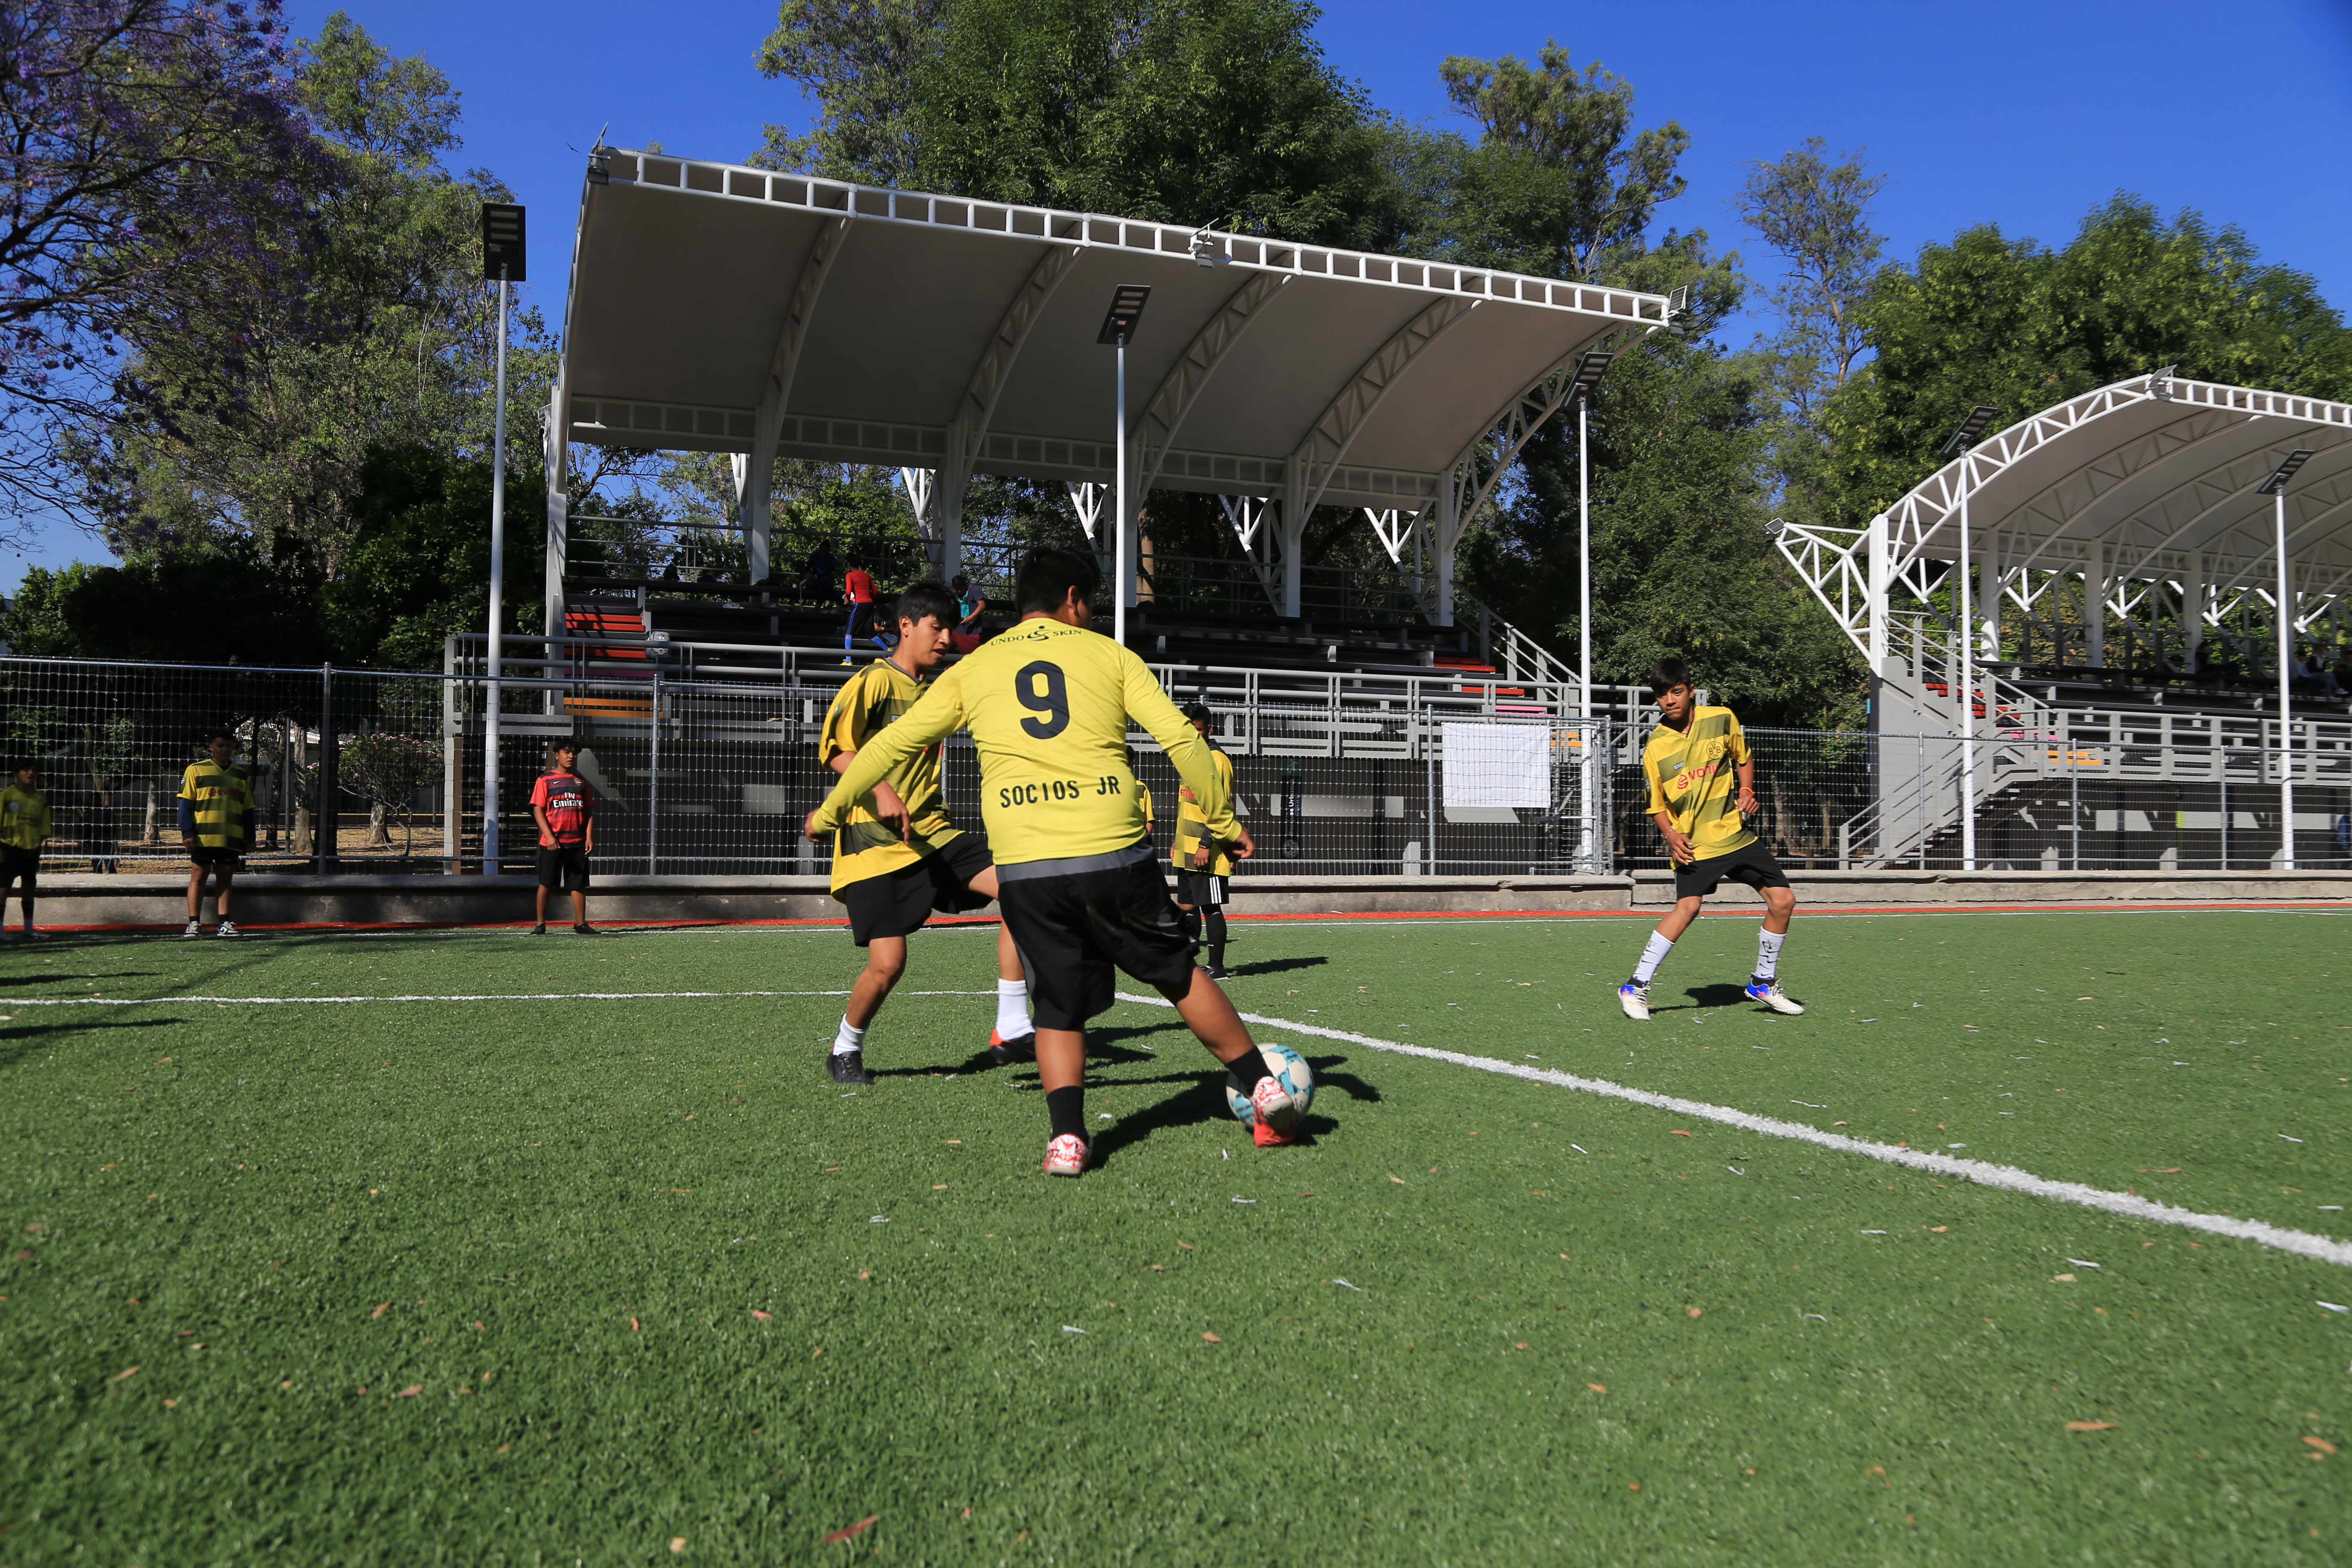 Rehabilitan cancha de futbol del ANP Parque González Gallo, a cargo de la Agencia de Bosques Urbanos en colaboración con el Gobierno de Guadalajara